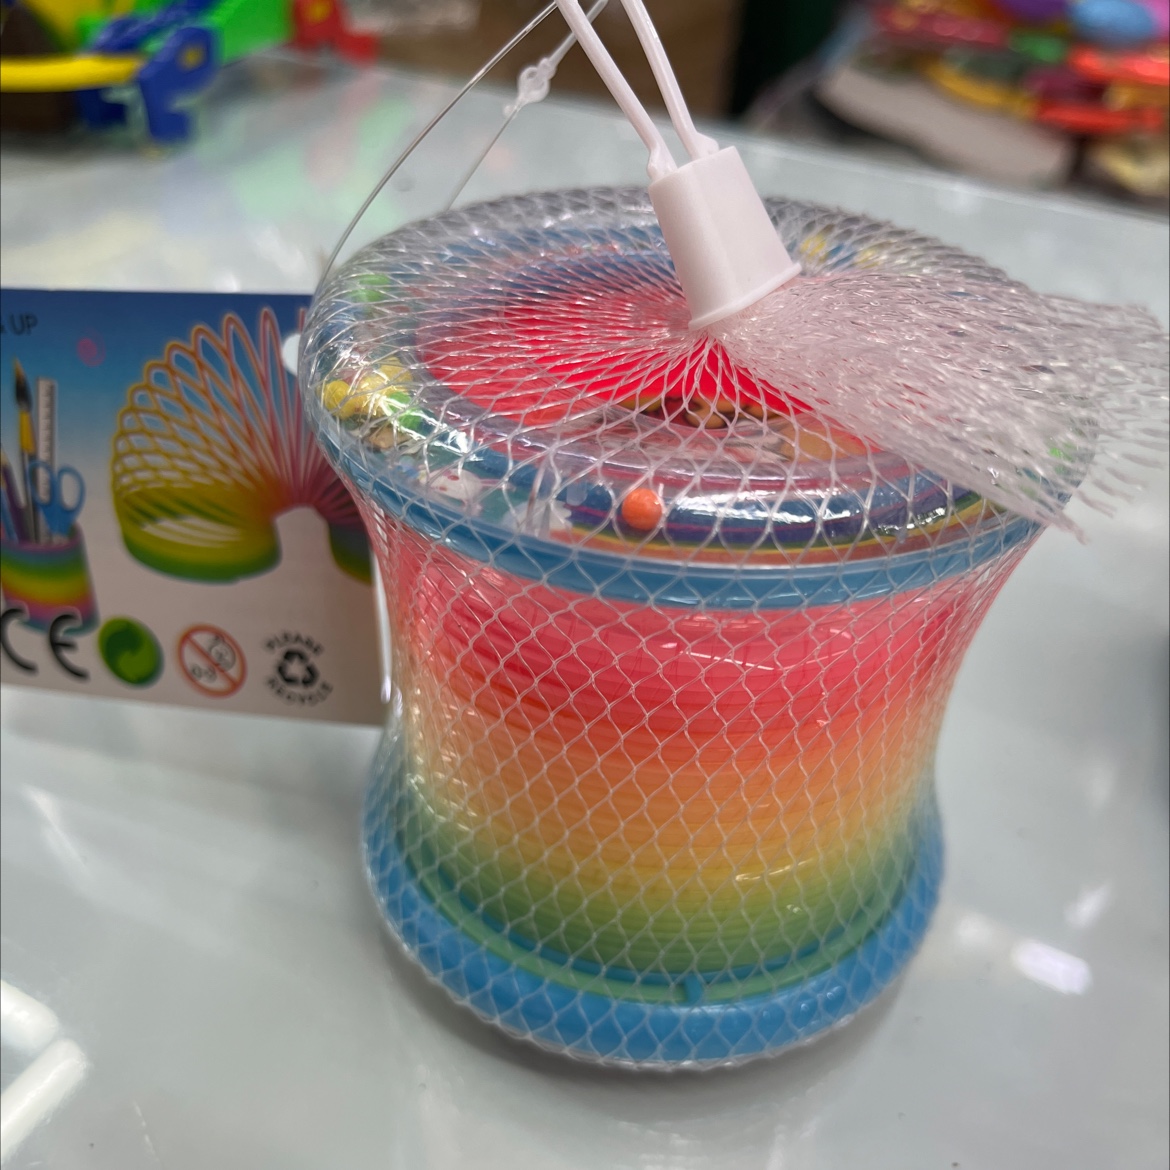 塑料制品两圈彩虹圈塑料玩具儿童玩具图